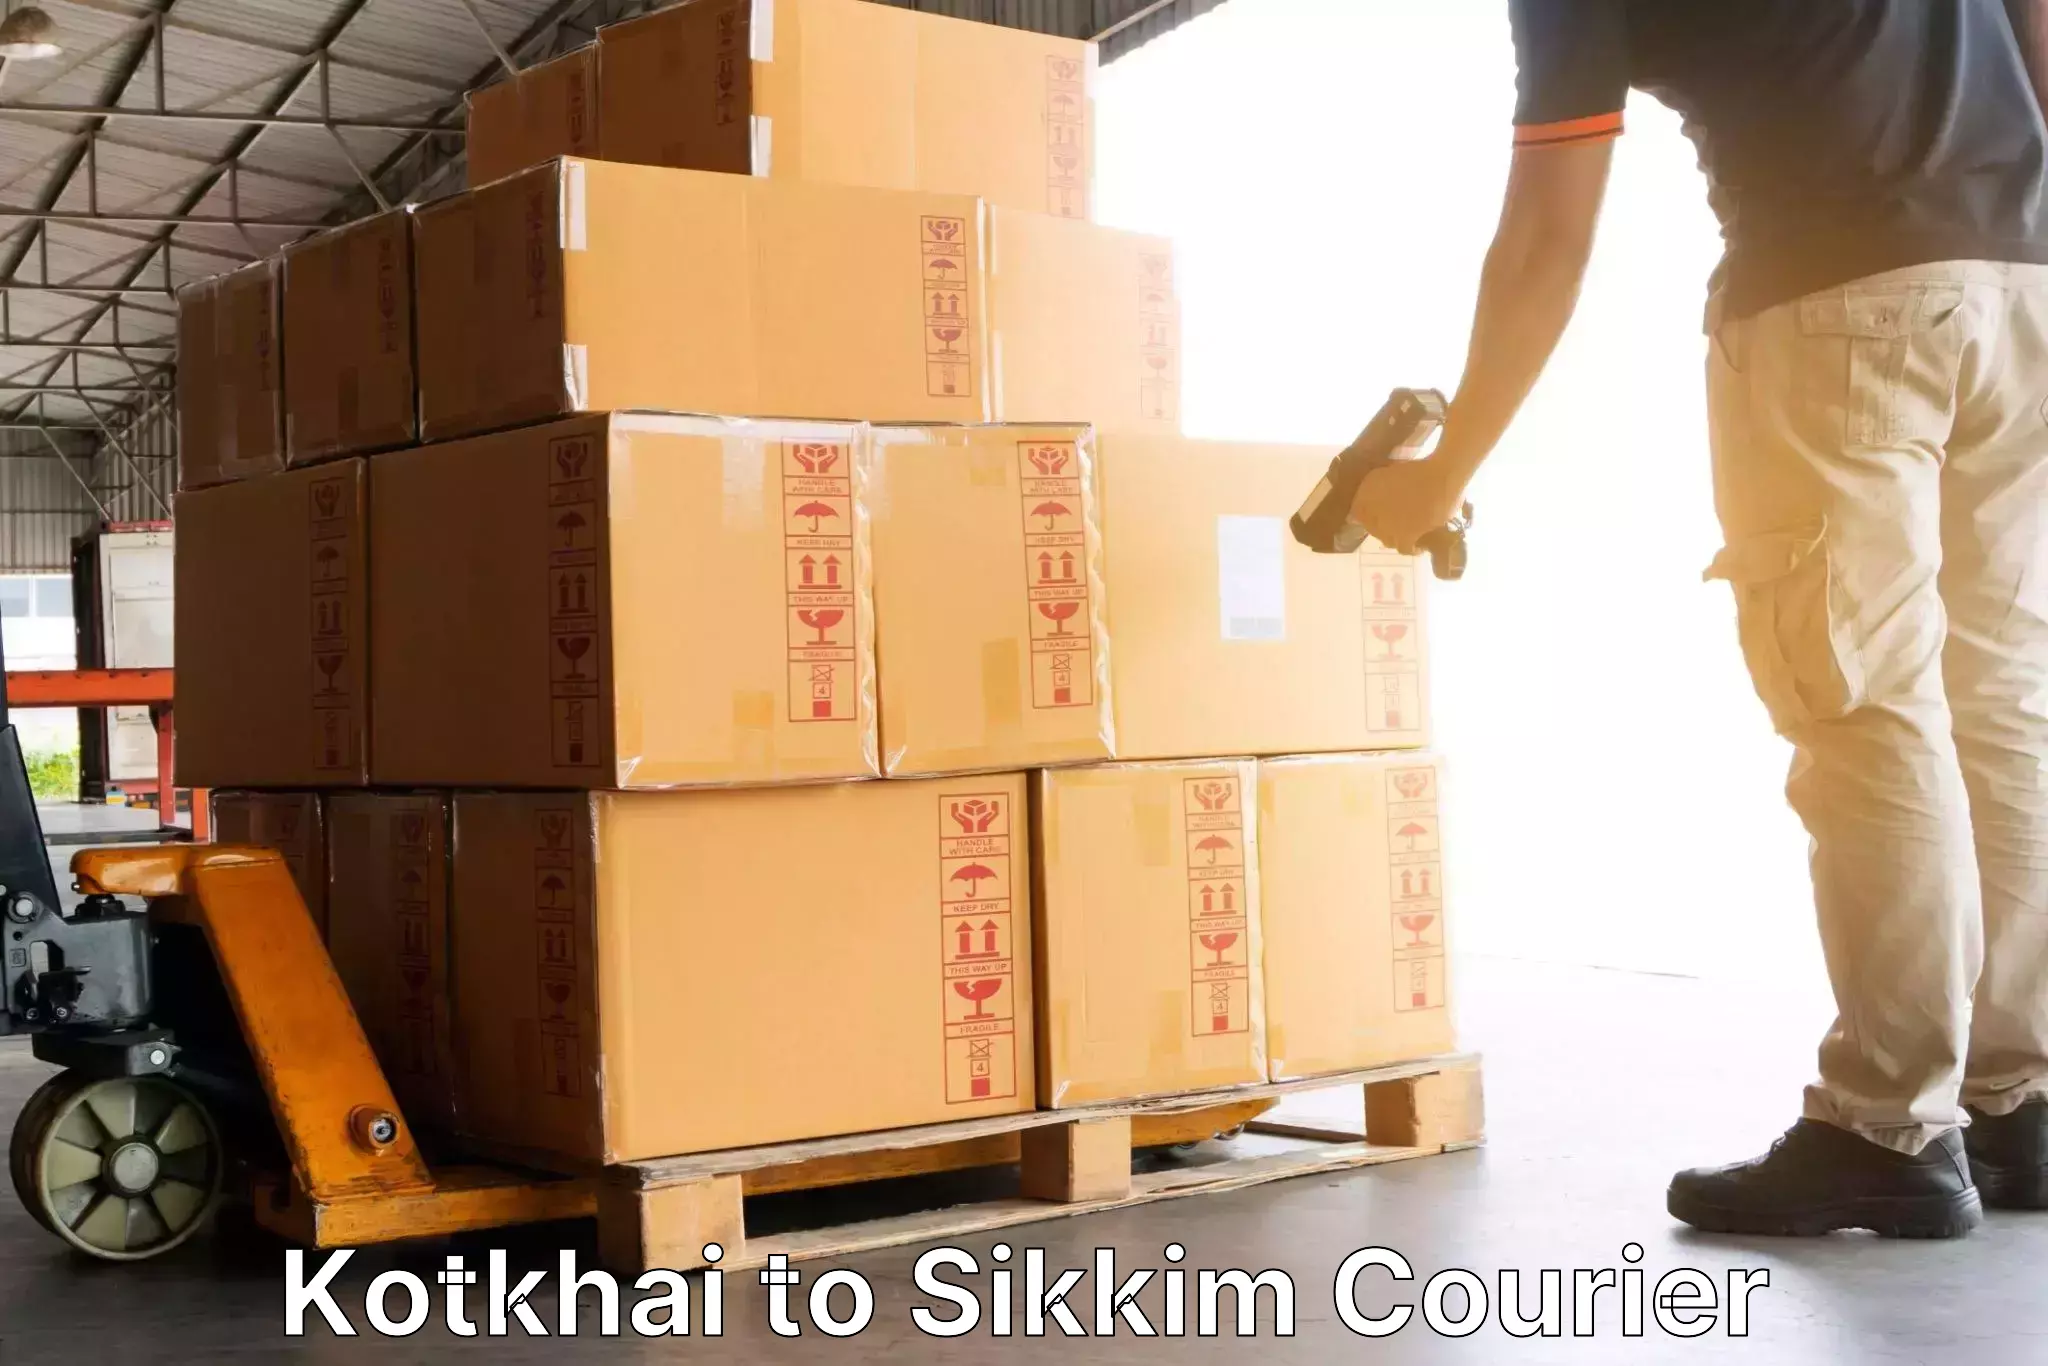 Customer-centric shipping Kotkhai to Mangan